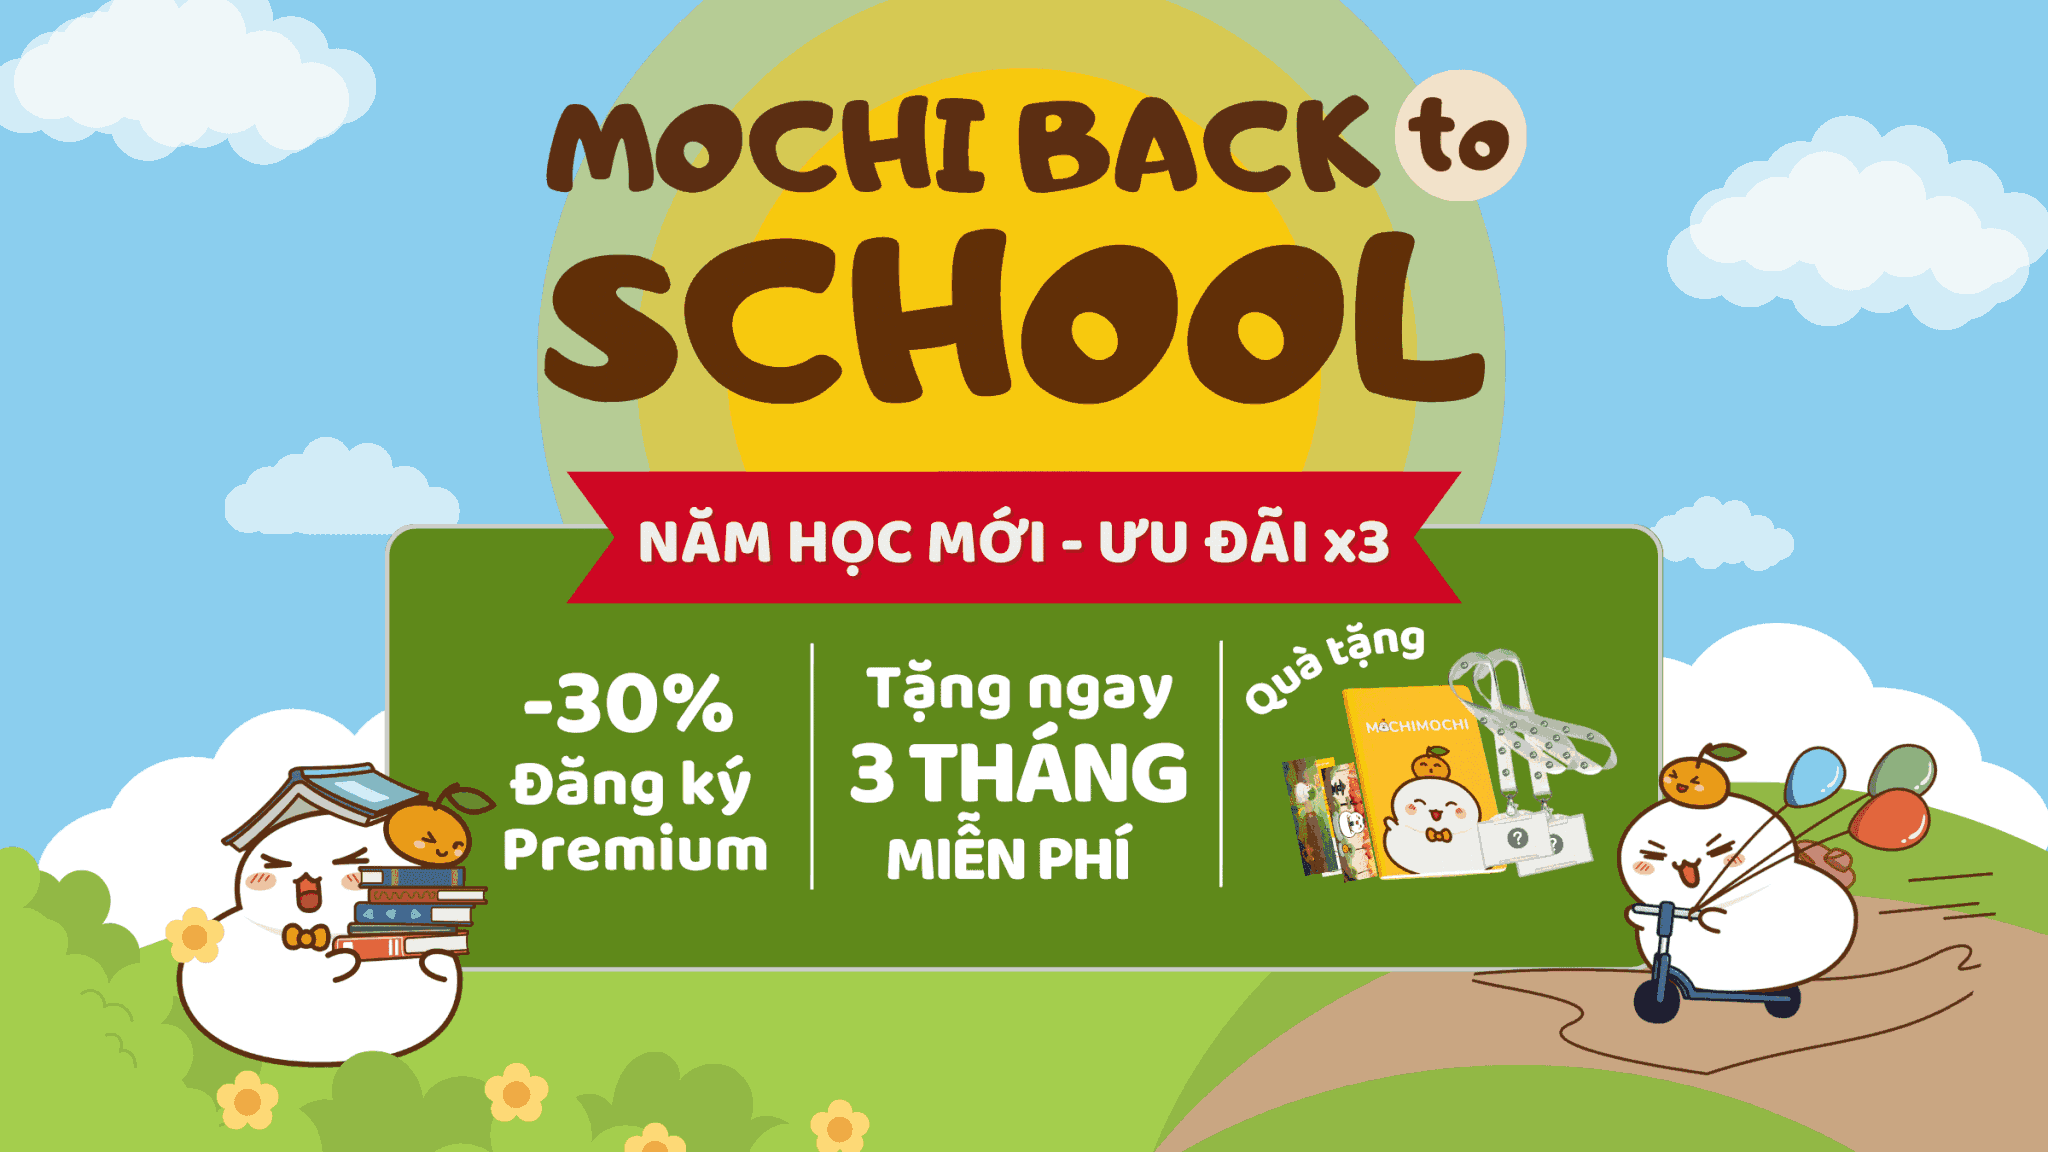 Mochi Back to School – Hướng dẫn tham gia chương trình